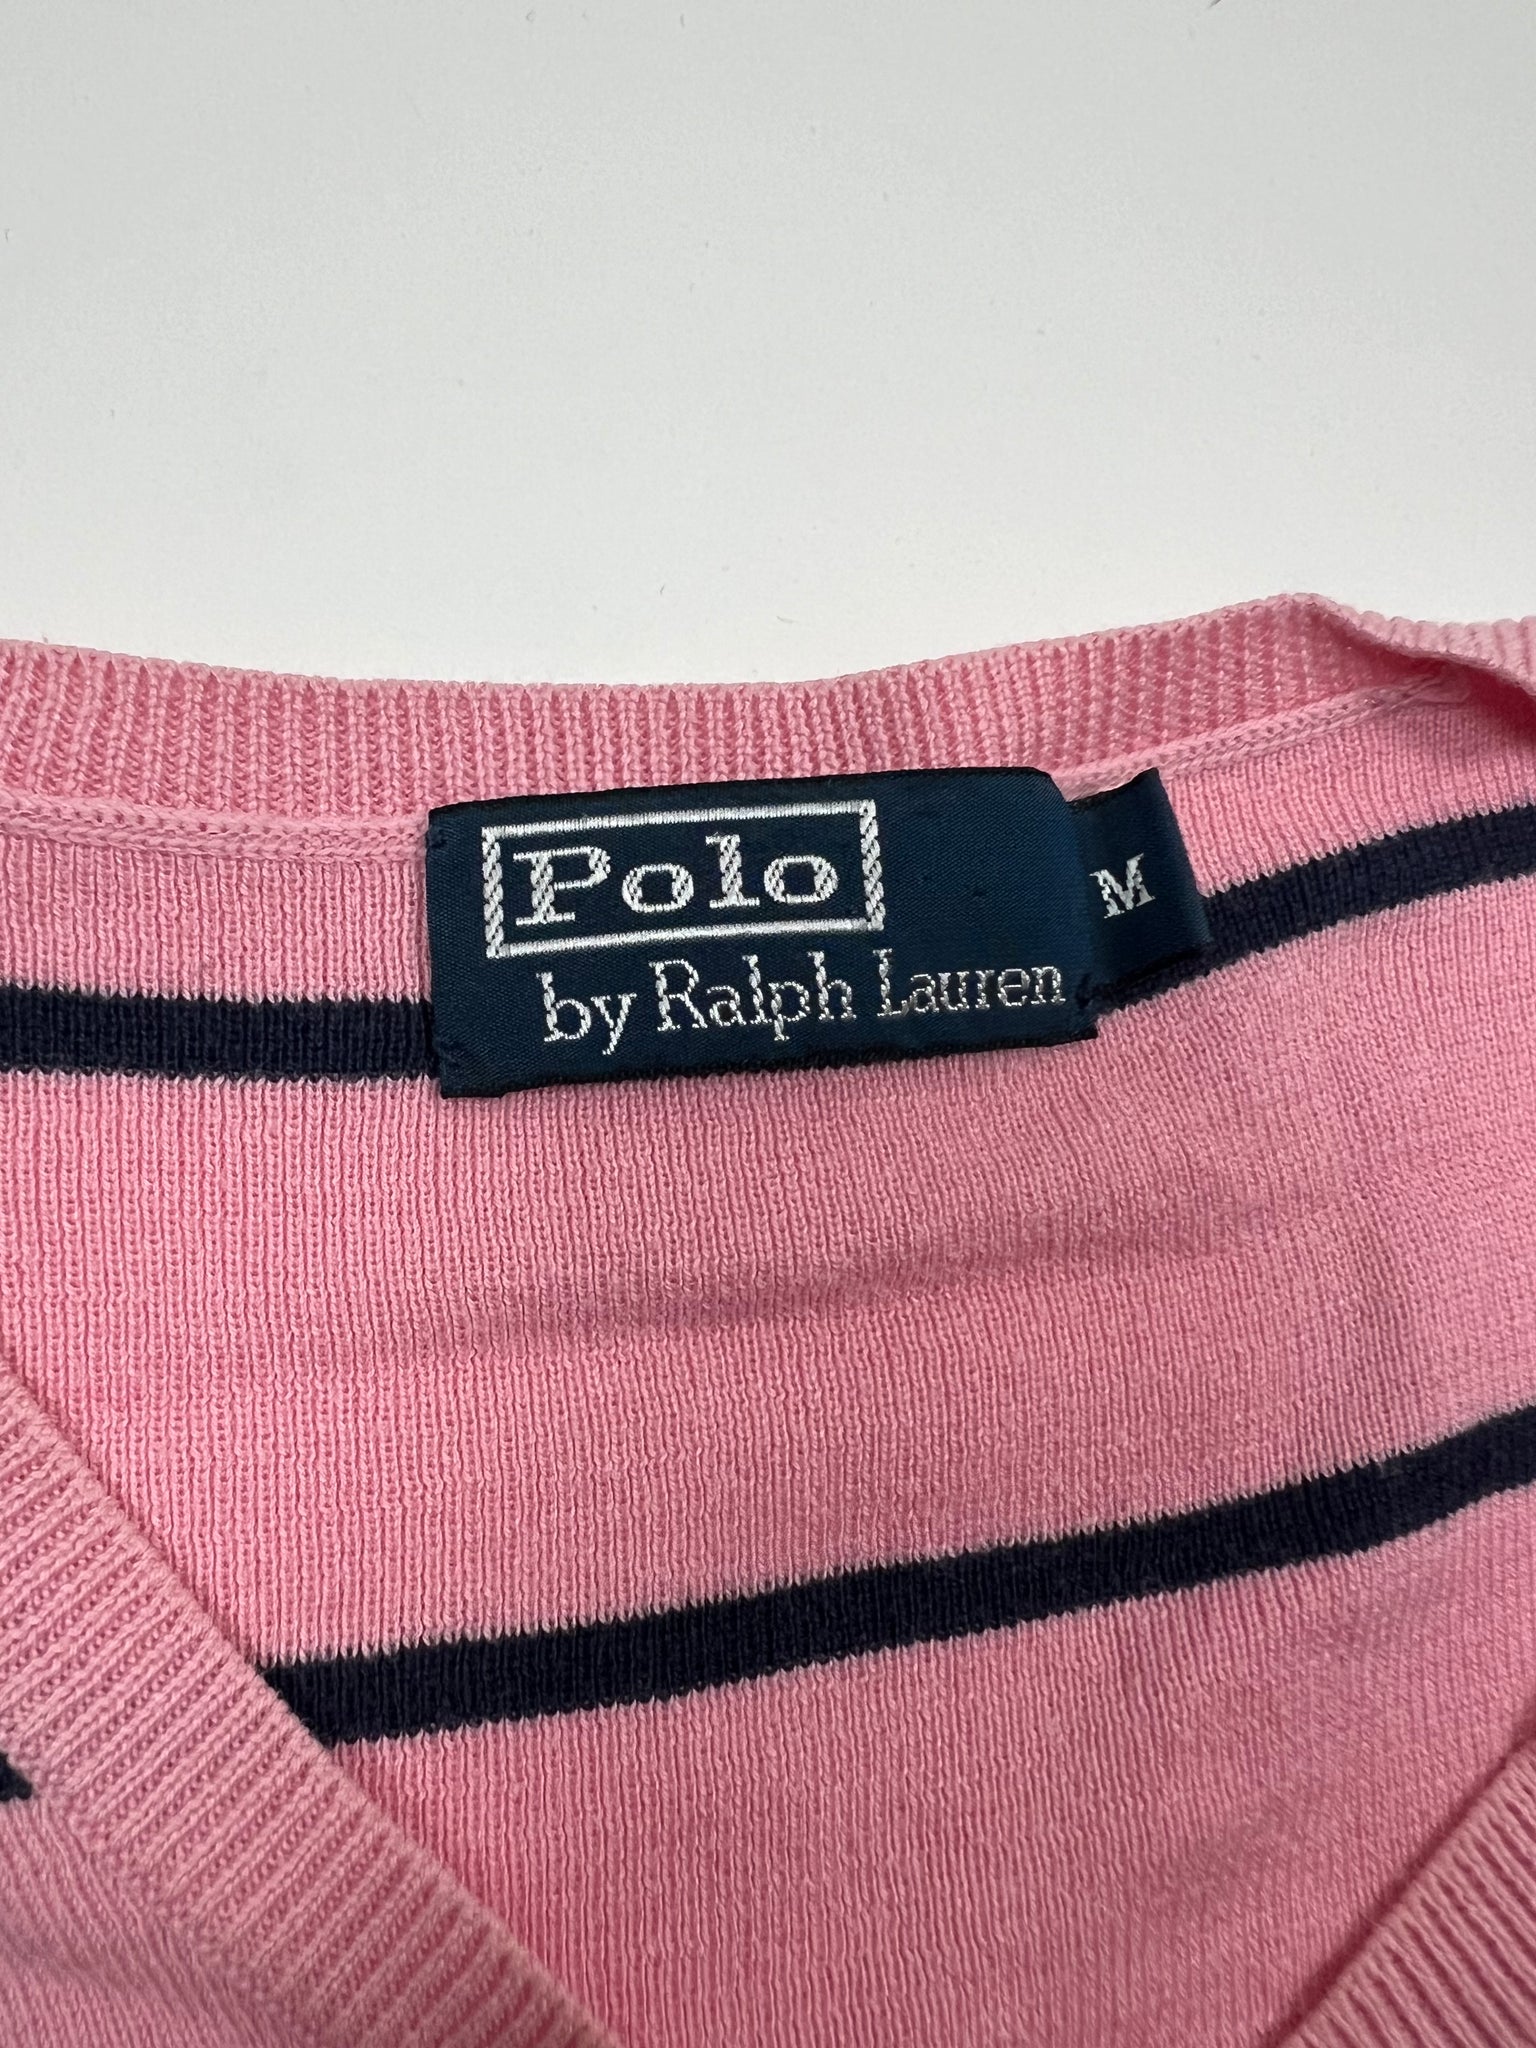 Polo Ralph Lauren Sweater (M)